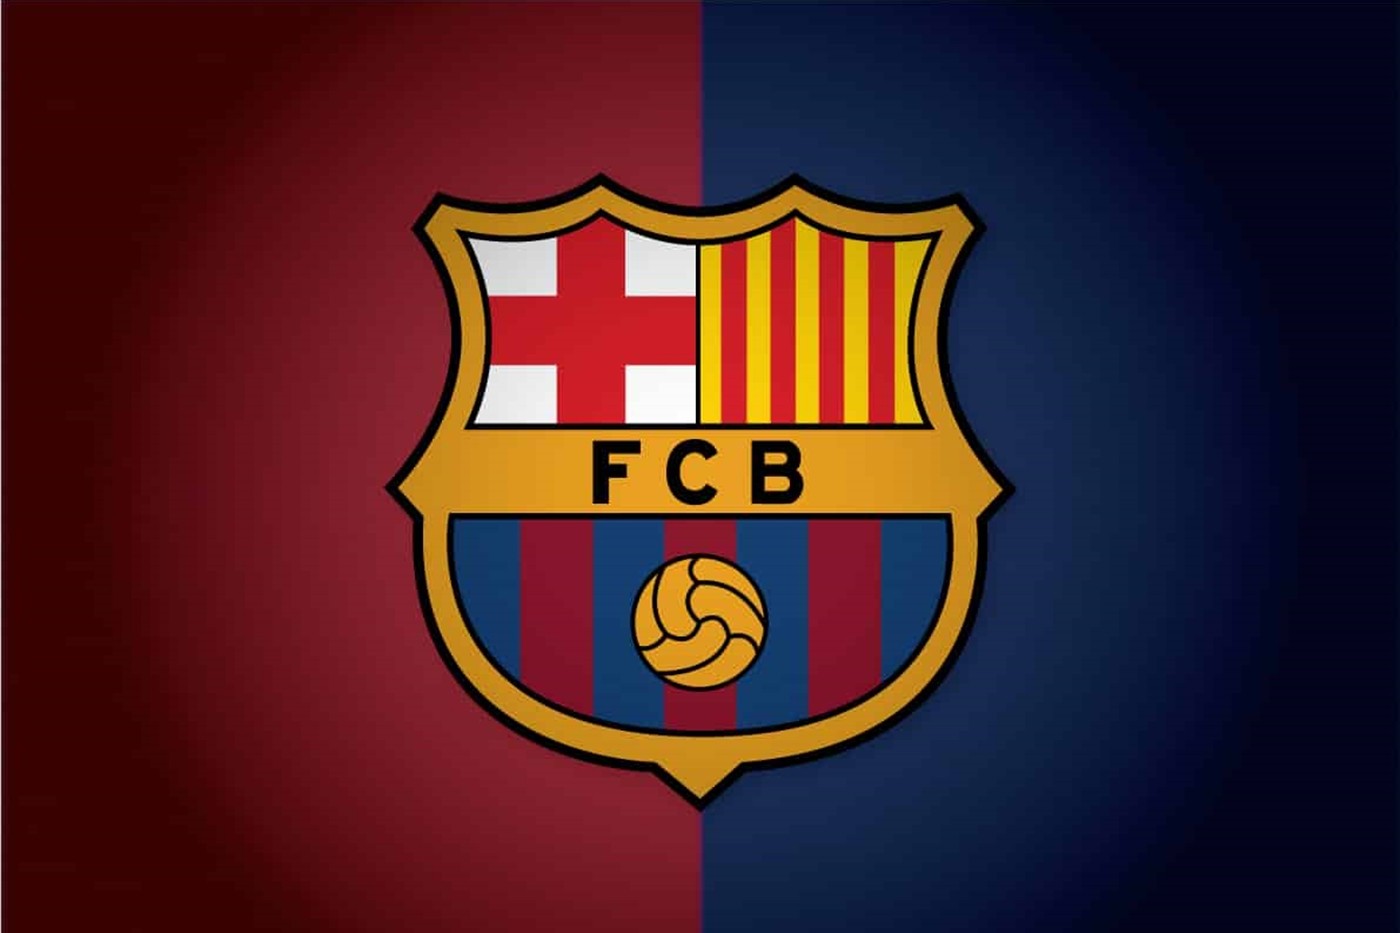 Câu lạc bộ Barcelona